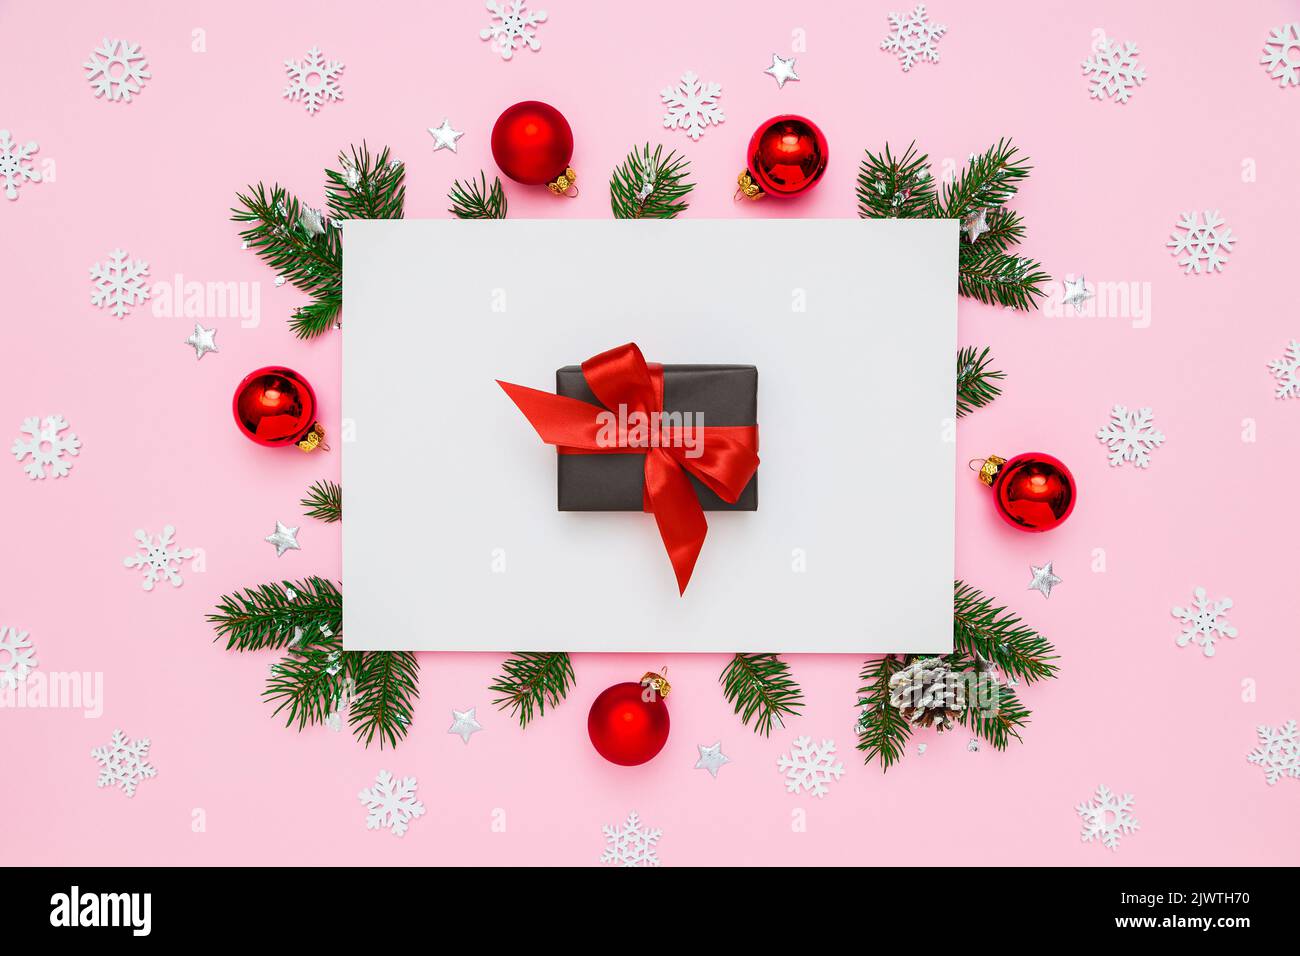 Natale, Capodanno disposizione vacanza. Scatola regalo nera con arco rosso in cornice di rami di abete naturale e decorazioni su fondo piatto bianco e rosa pastello Foto Stock